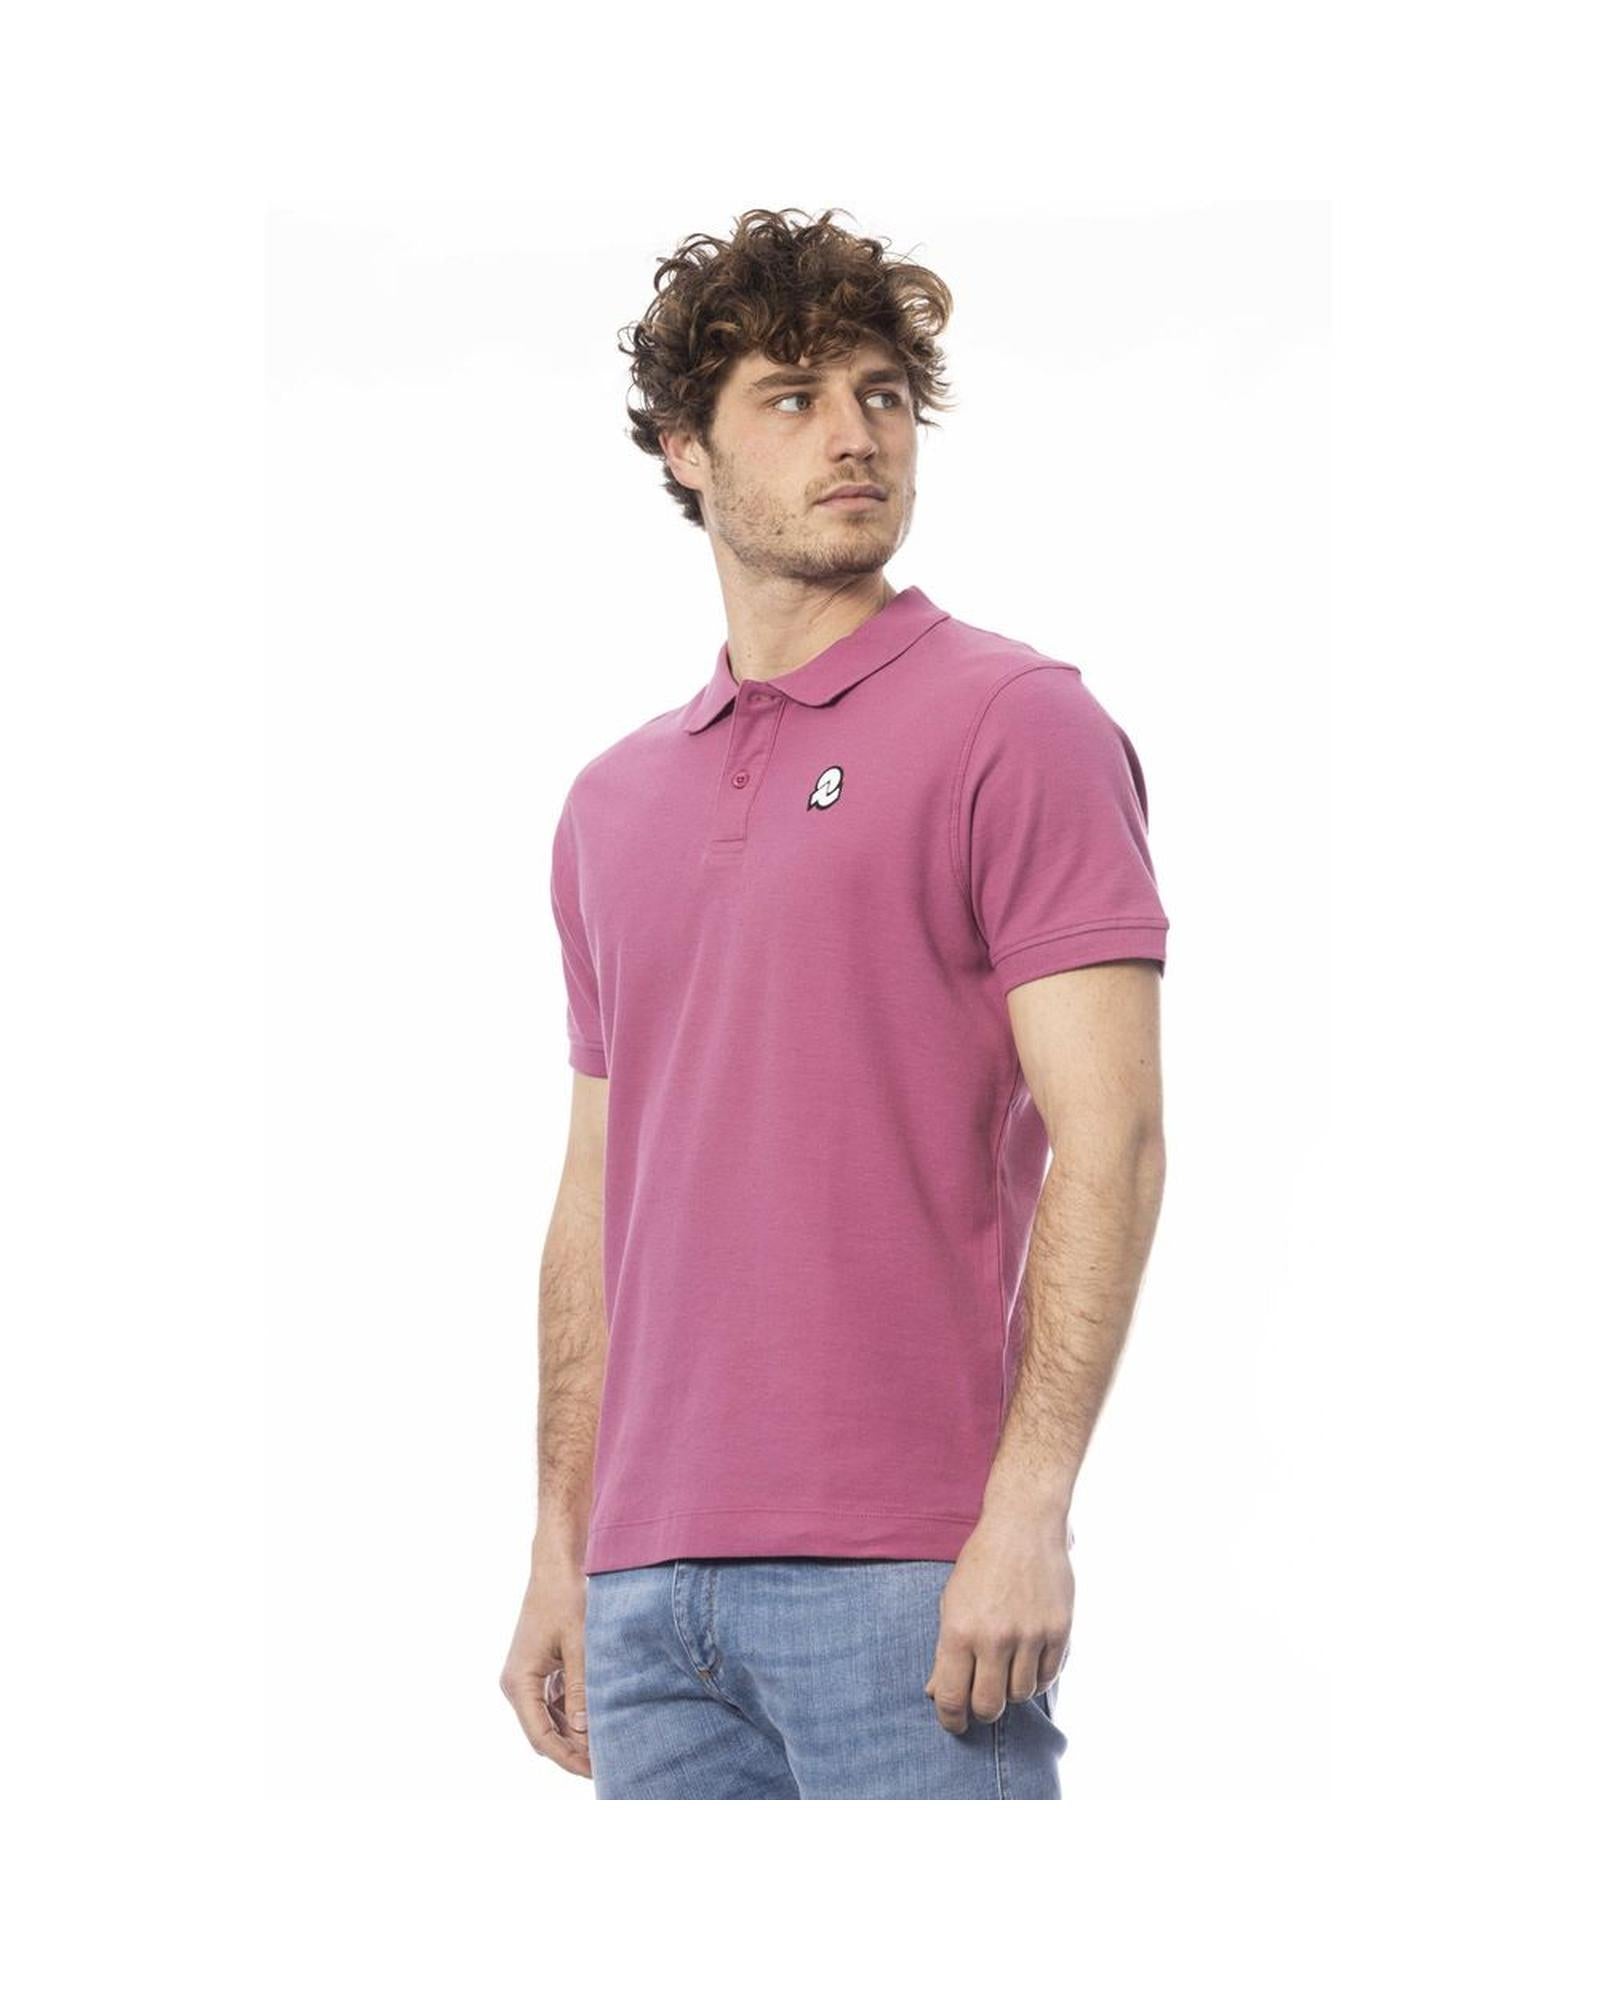 Invicta Men's Purple Cotton Polo Shirt - XL